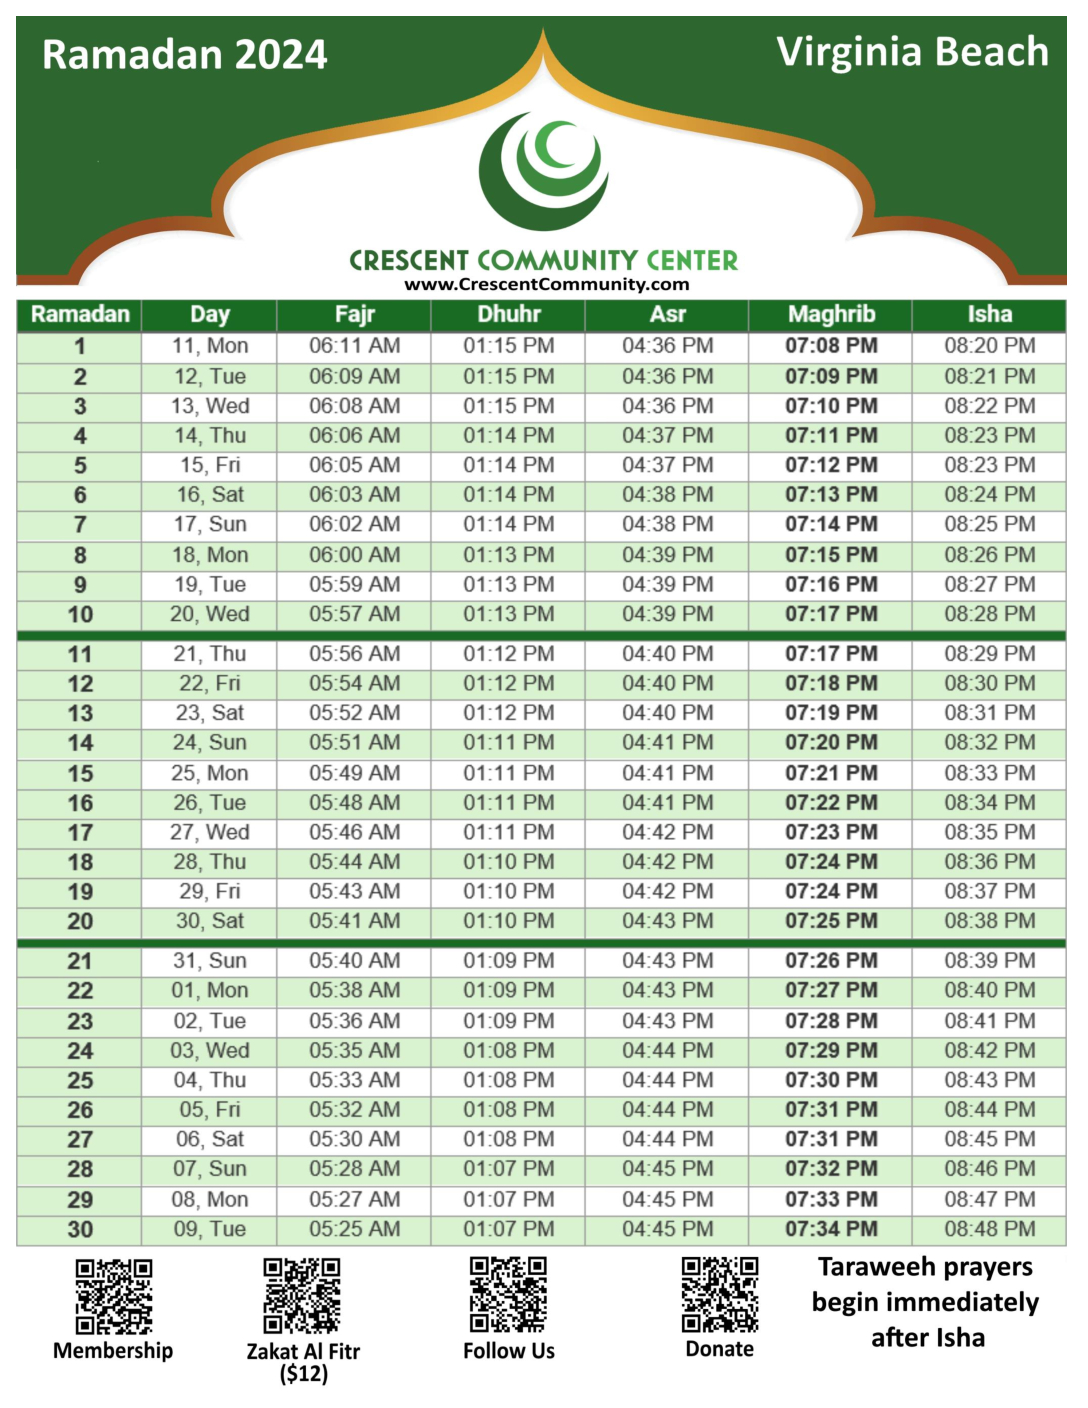 Ramadan 2024 Calendar Time